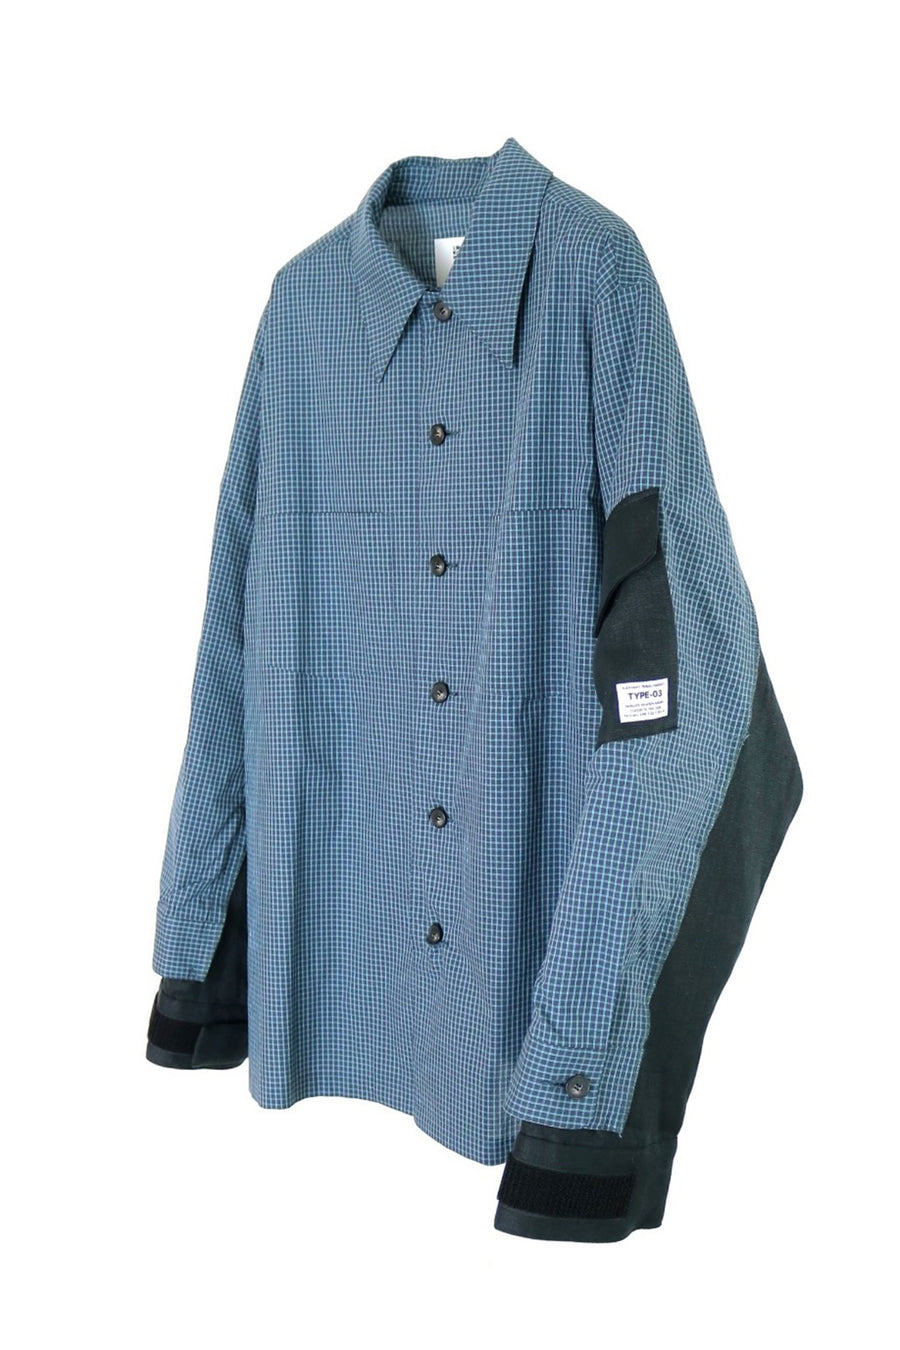 elephant TRIBAL fabrics  Double Sleeve Corny Shirt